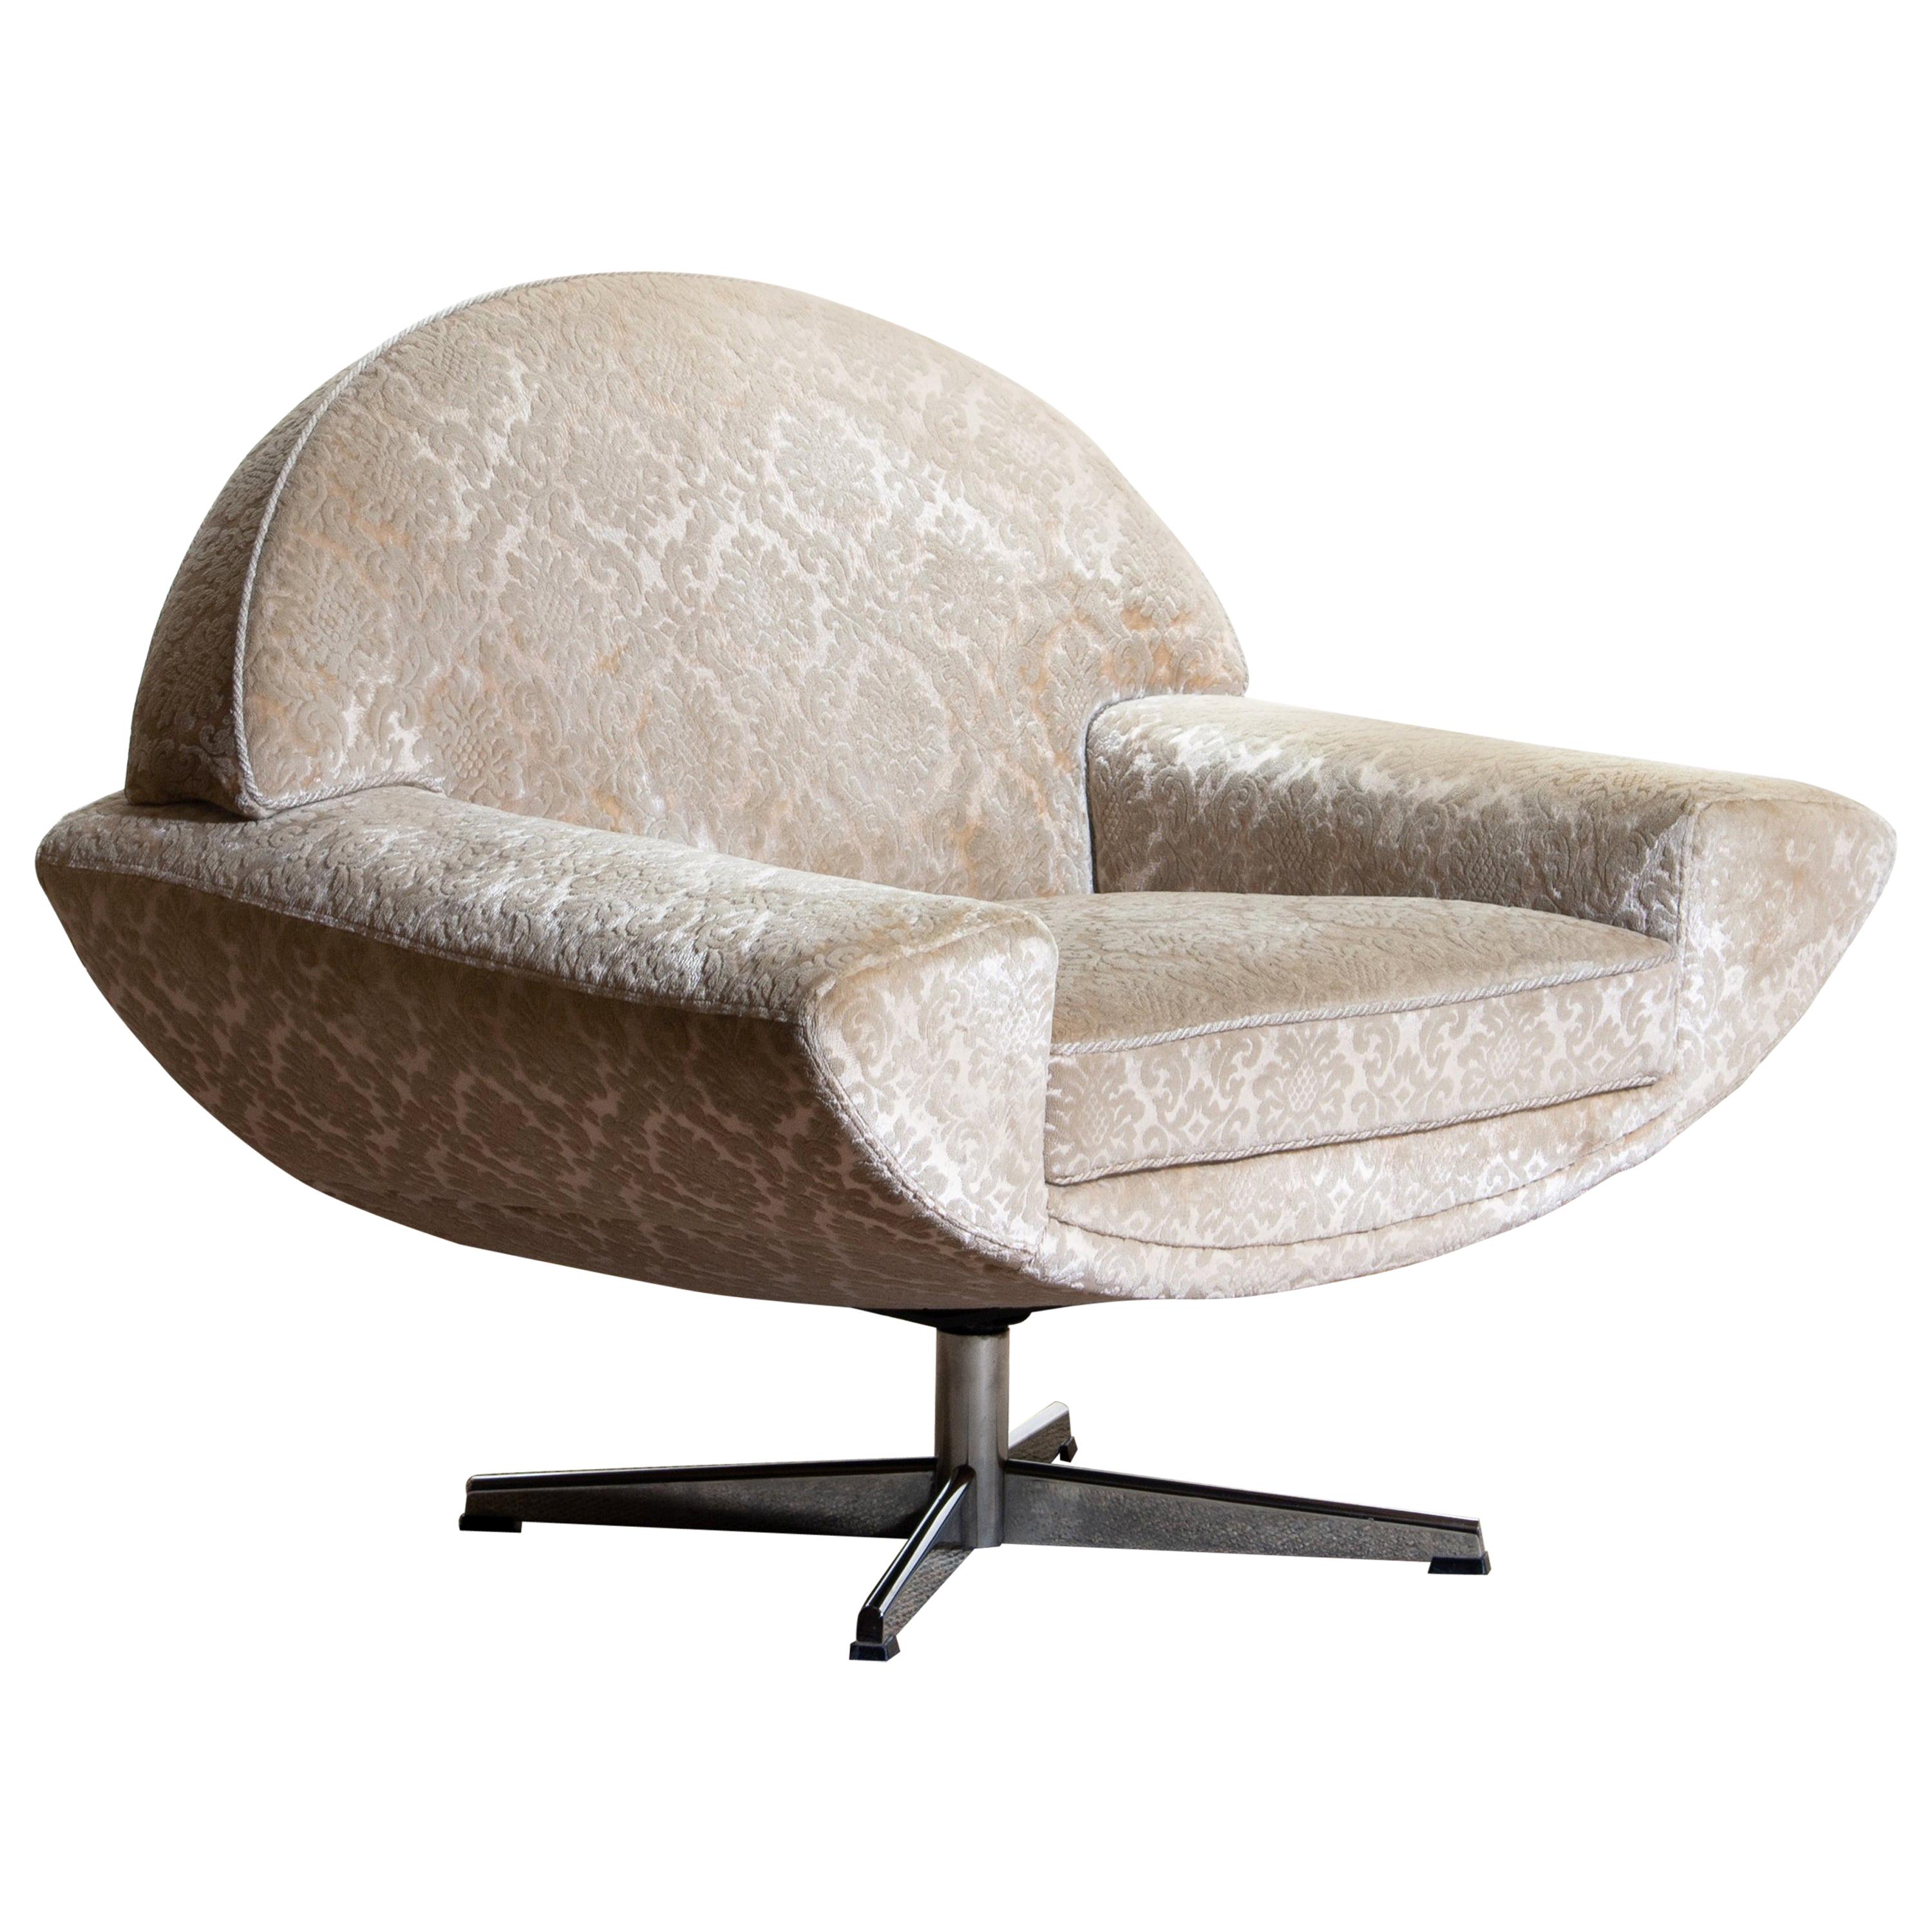 1960s "Capri" Swivel Easy / Lounge Chair by Johannes Andersen for Trensum